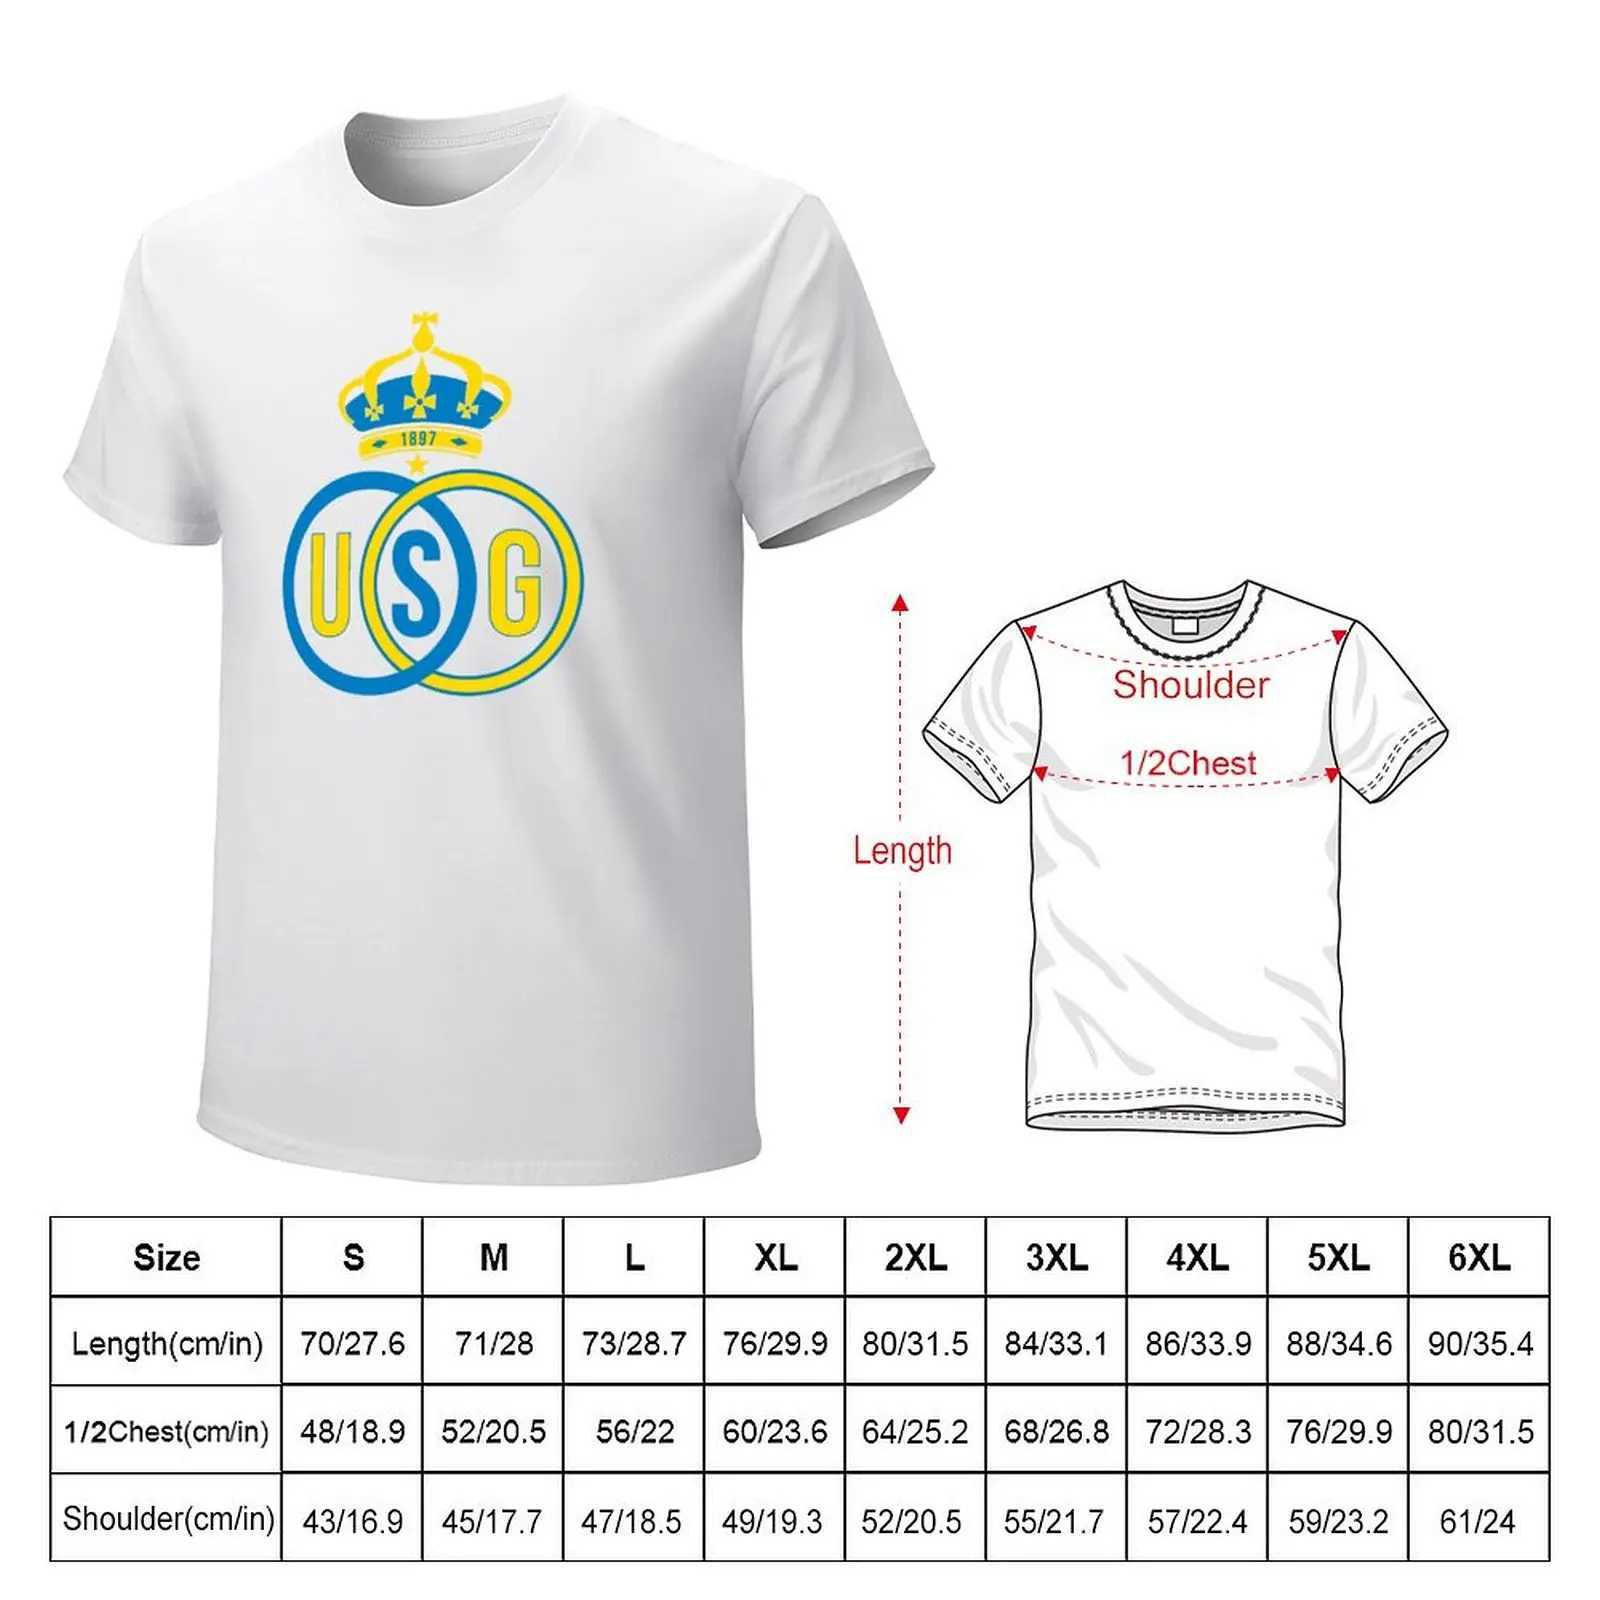 Herrst-shirts Royal Union Saint Gilloise T-shirts White Vintage Mens T-shirt setl2403